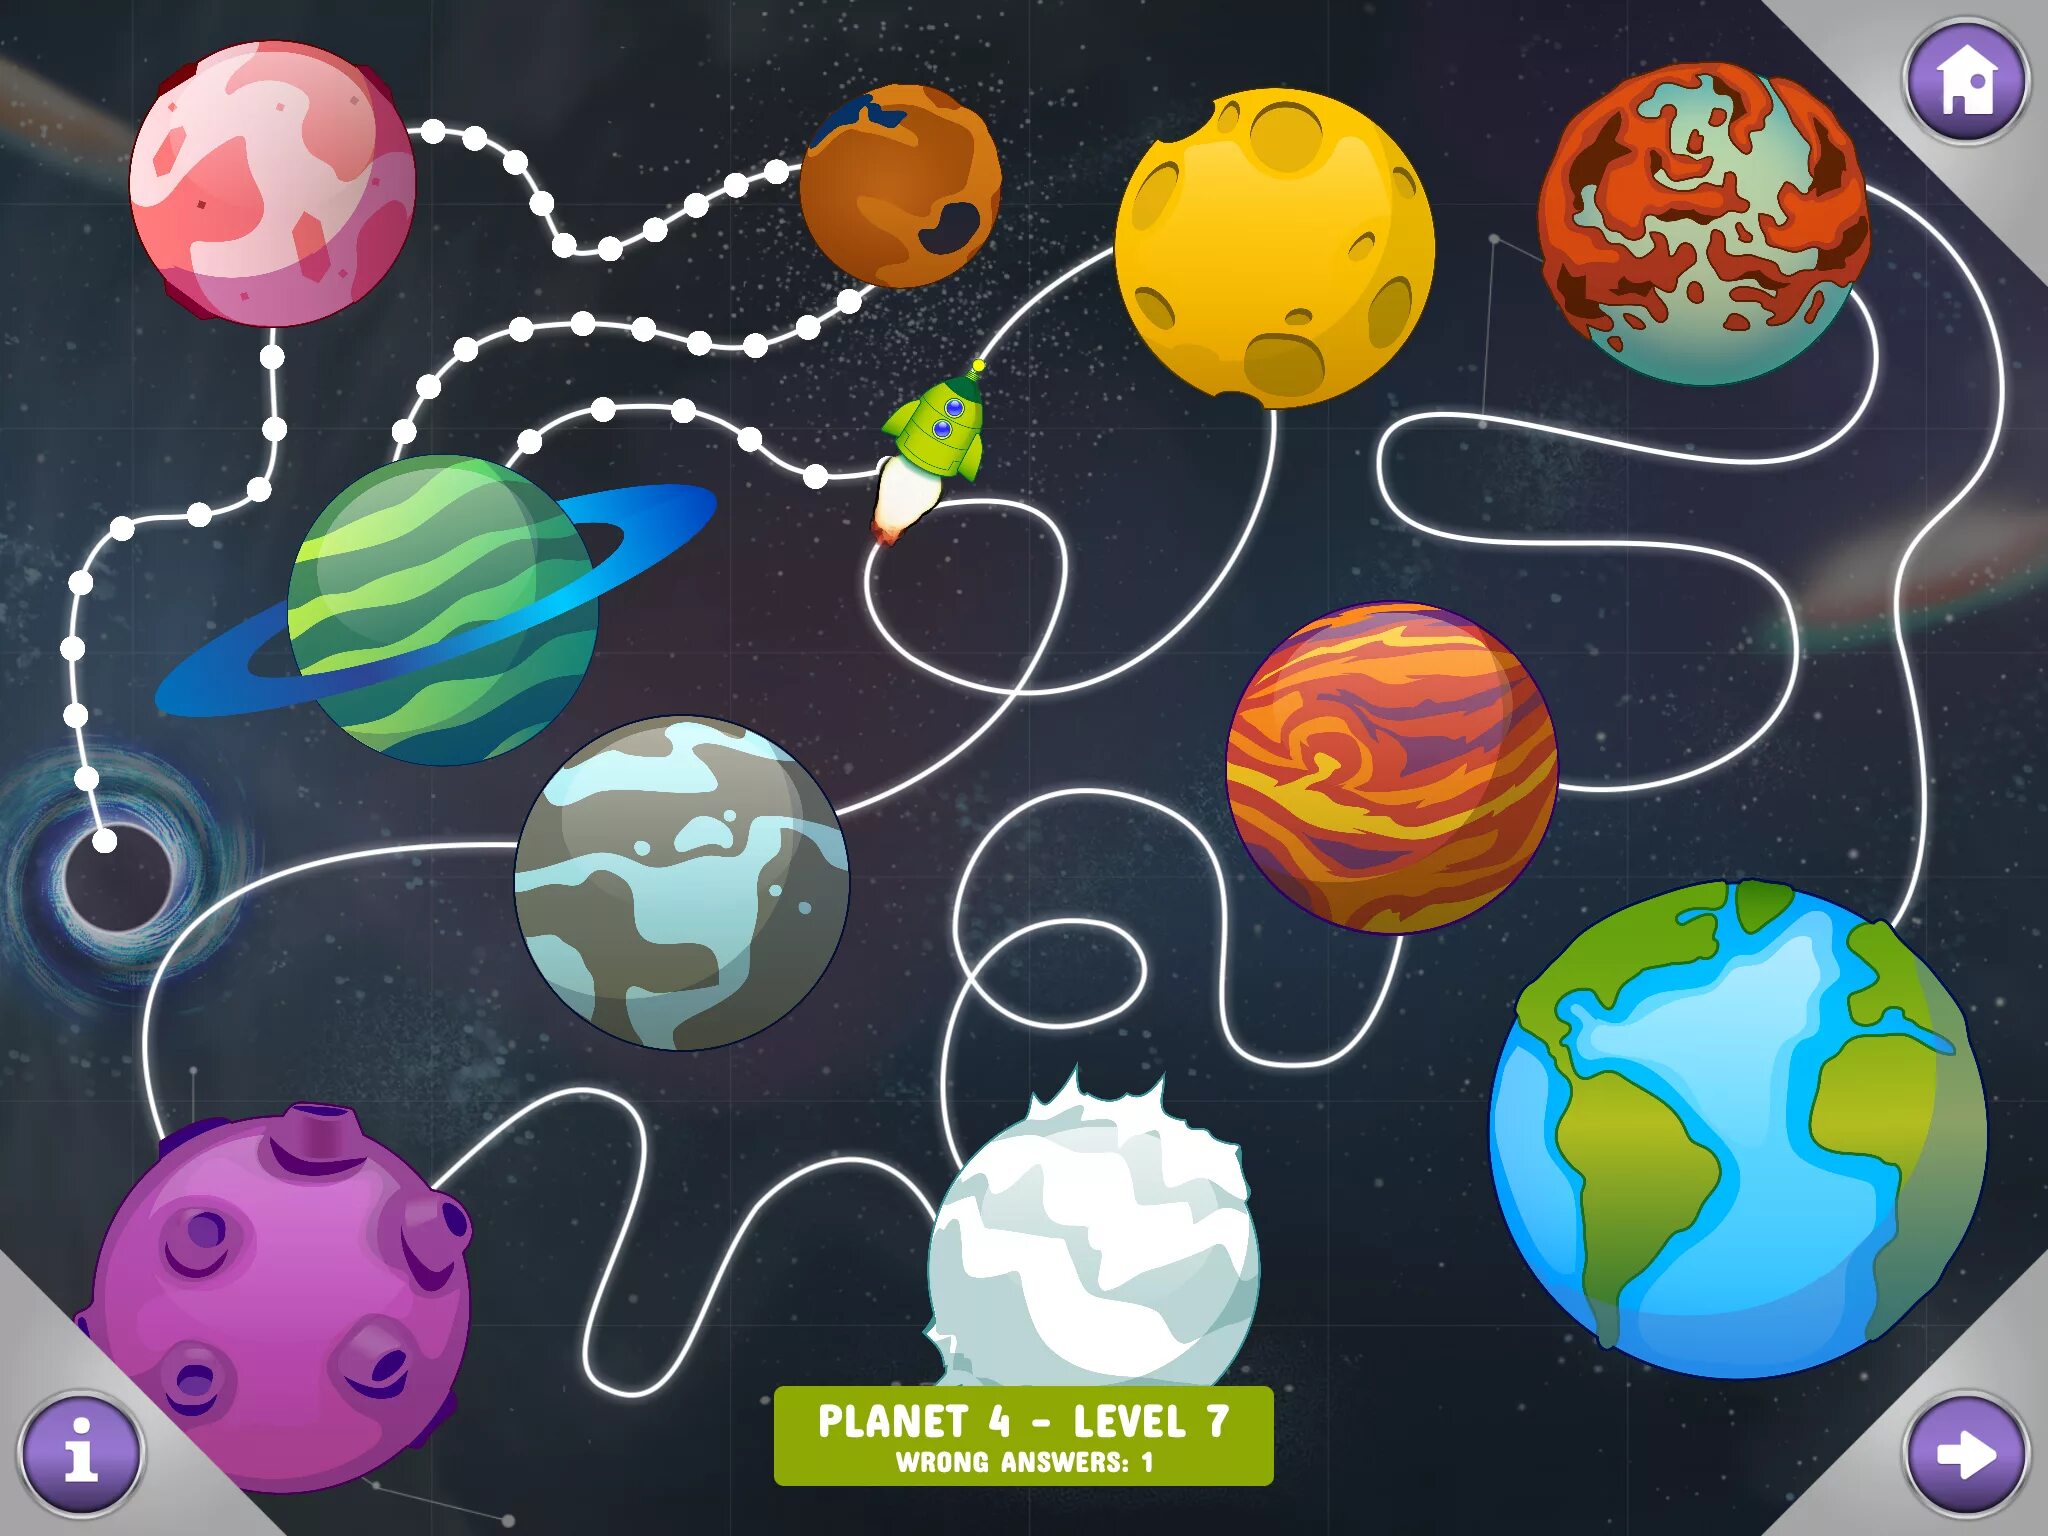 Игра путешествие в космос. Космос планеты для детей. Карта космического путешествия для детей. Игры про космос для детей. Космическое путешествие для детей.